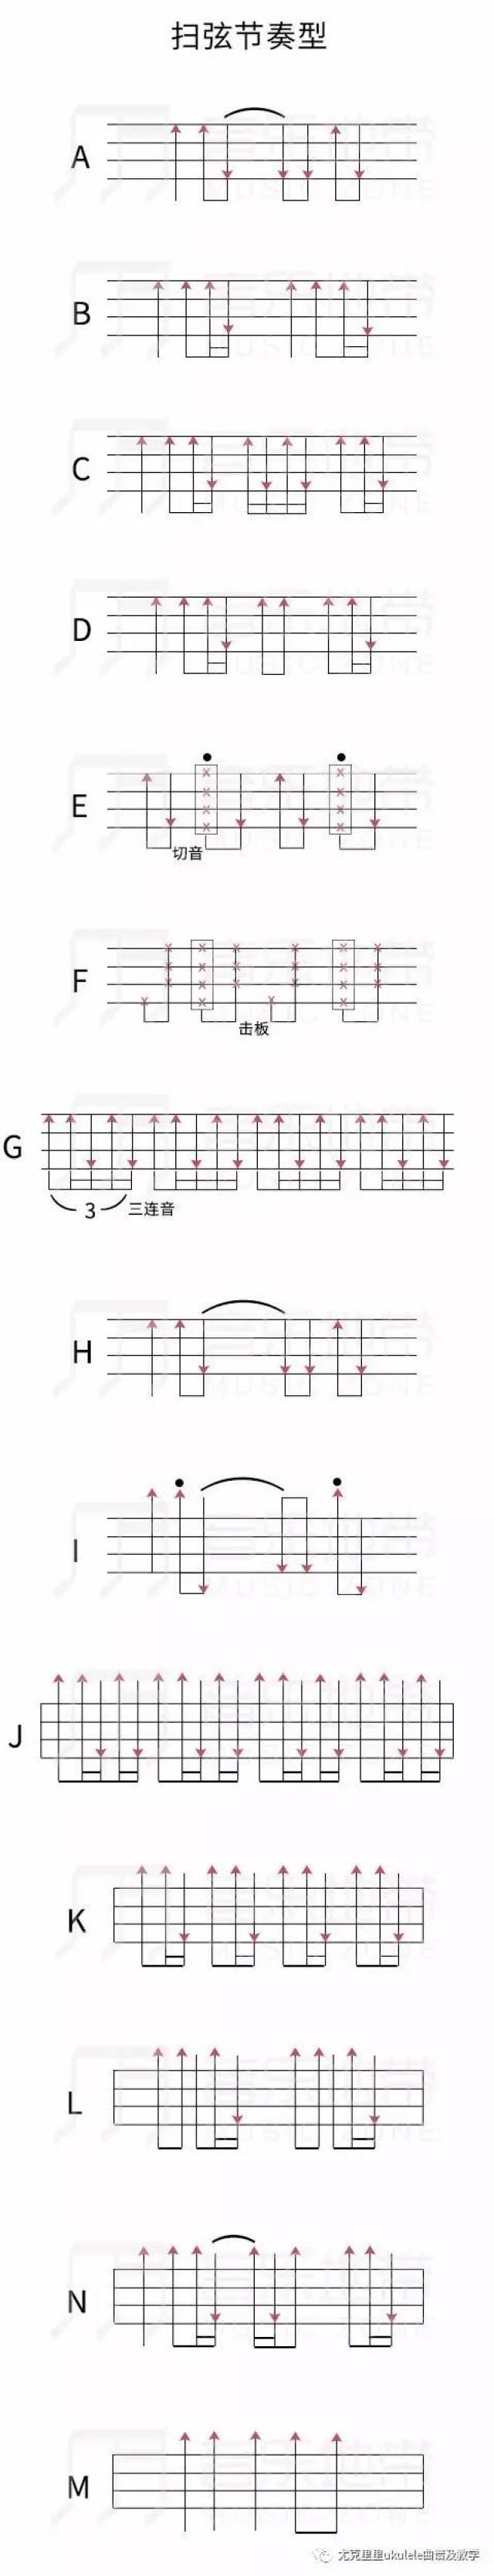 可以先用最简单的节奏型来练习,比如分解和扫弦节奏型中的第一个,等